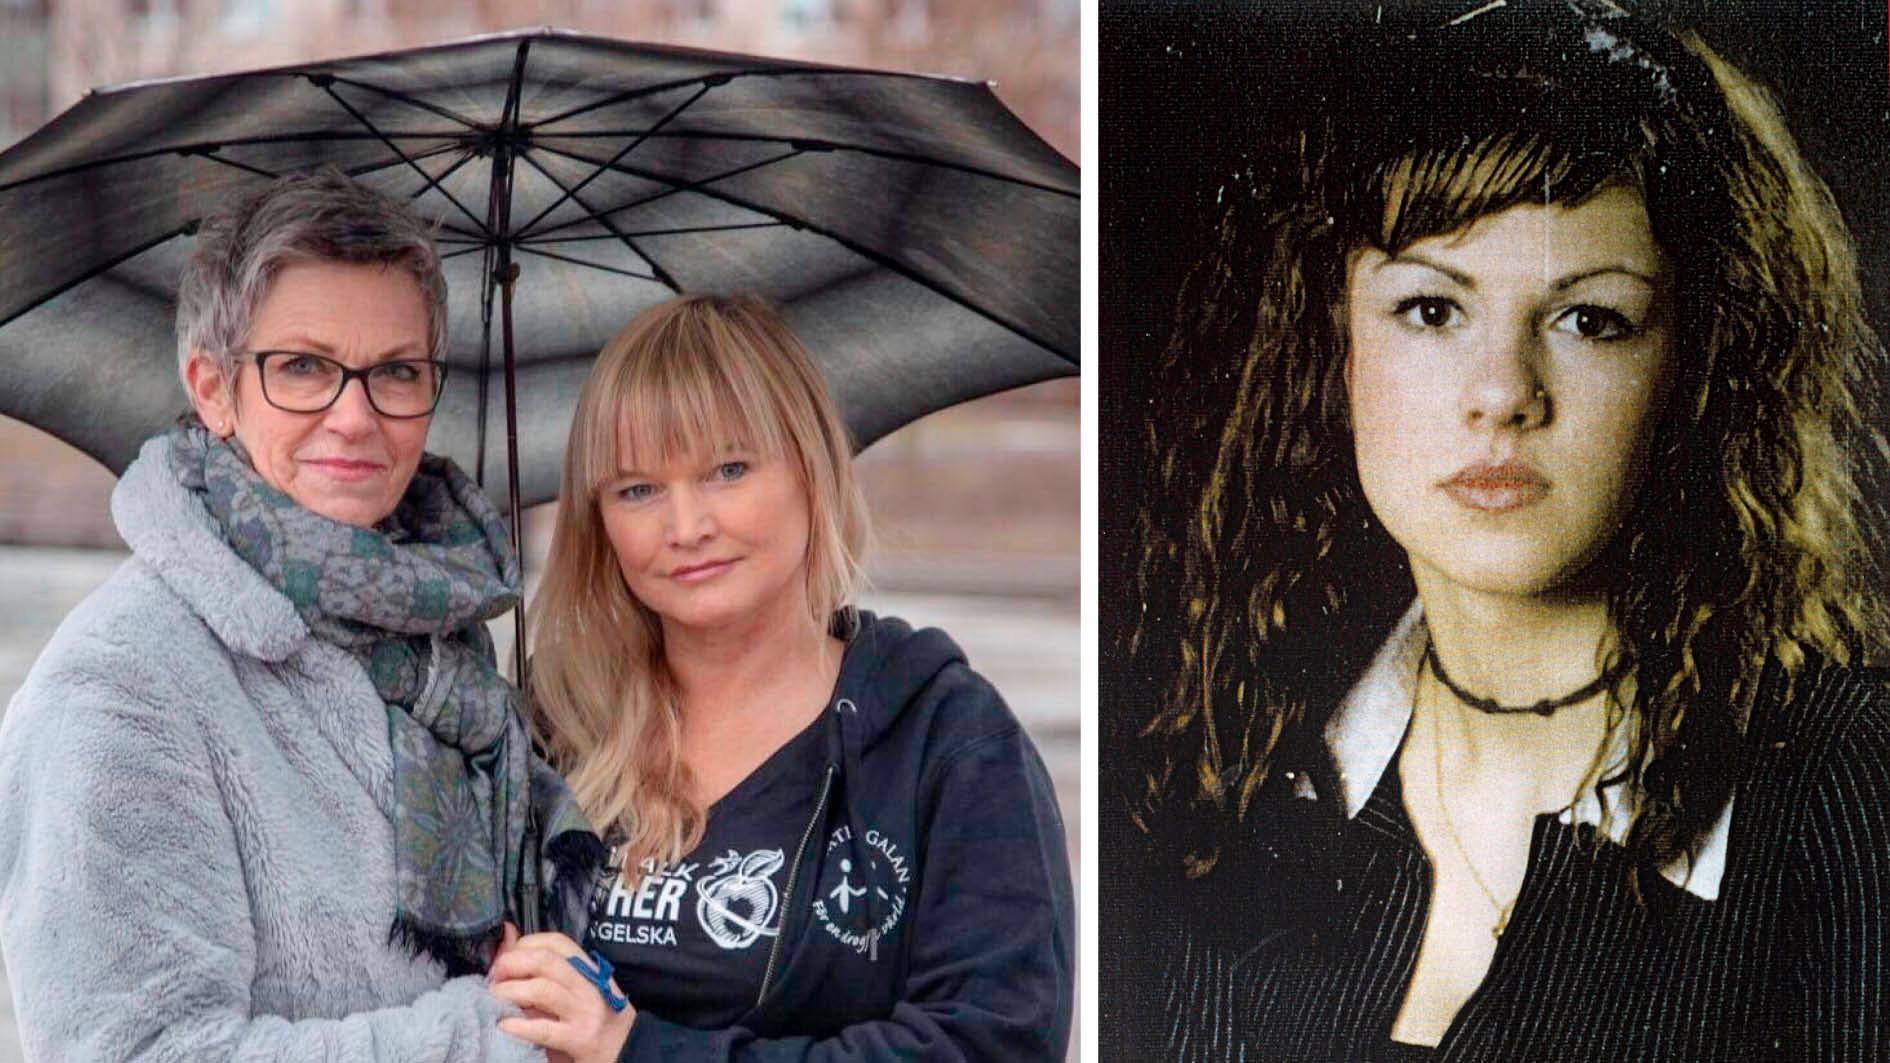 Jane Rönnqvists dotter Nathalie var 16 år när hon mördades av sin före detta pojkvän som använde anabola steroider. Det fick Jane och vännen Annelie Nordin att engagera sig i kampen mot droger. 